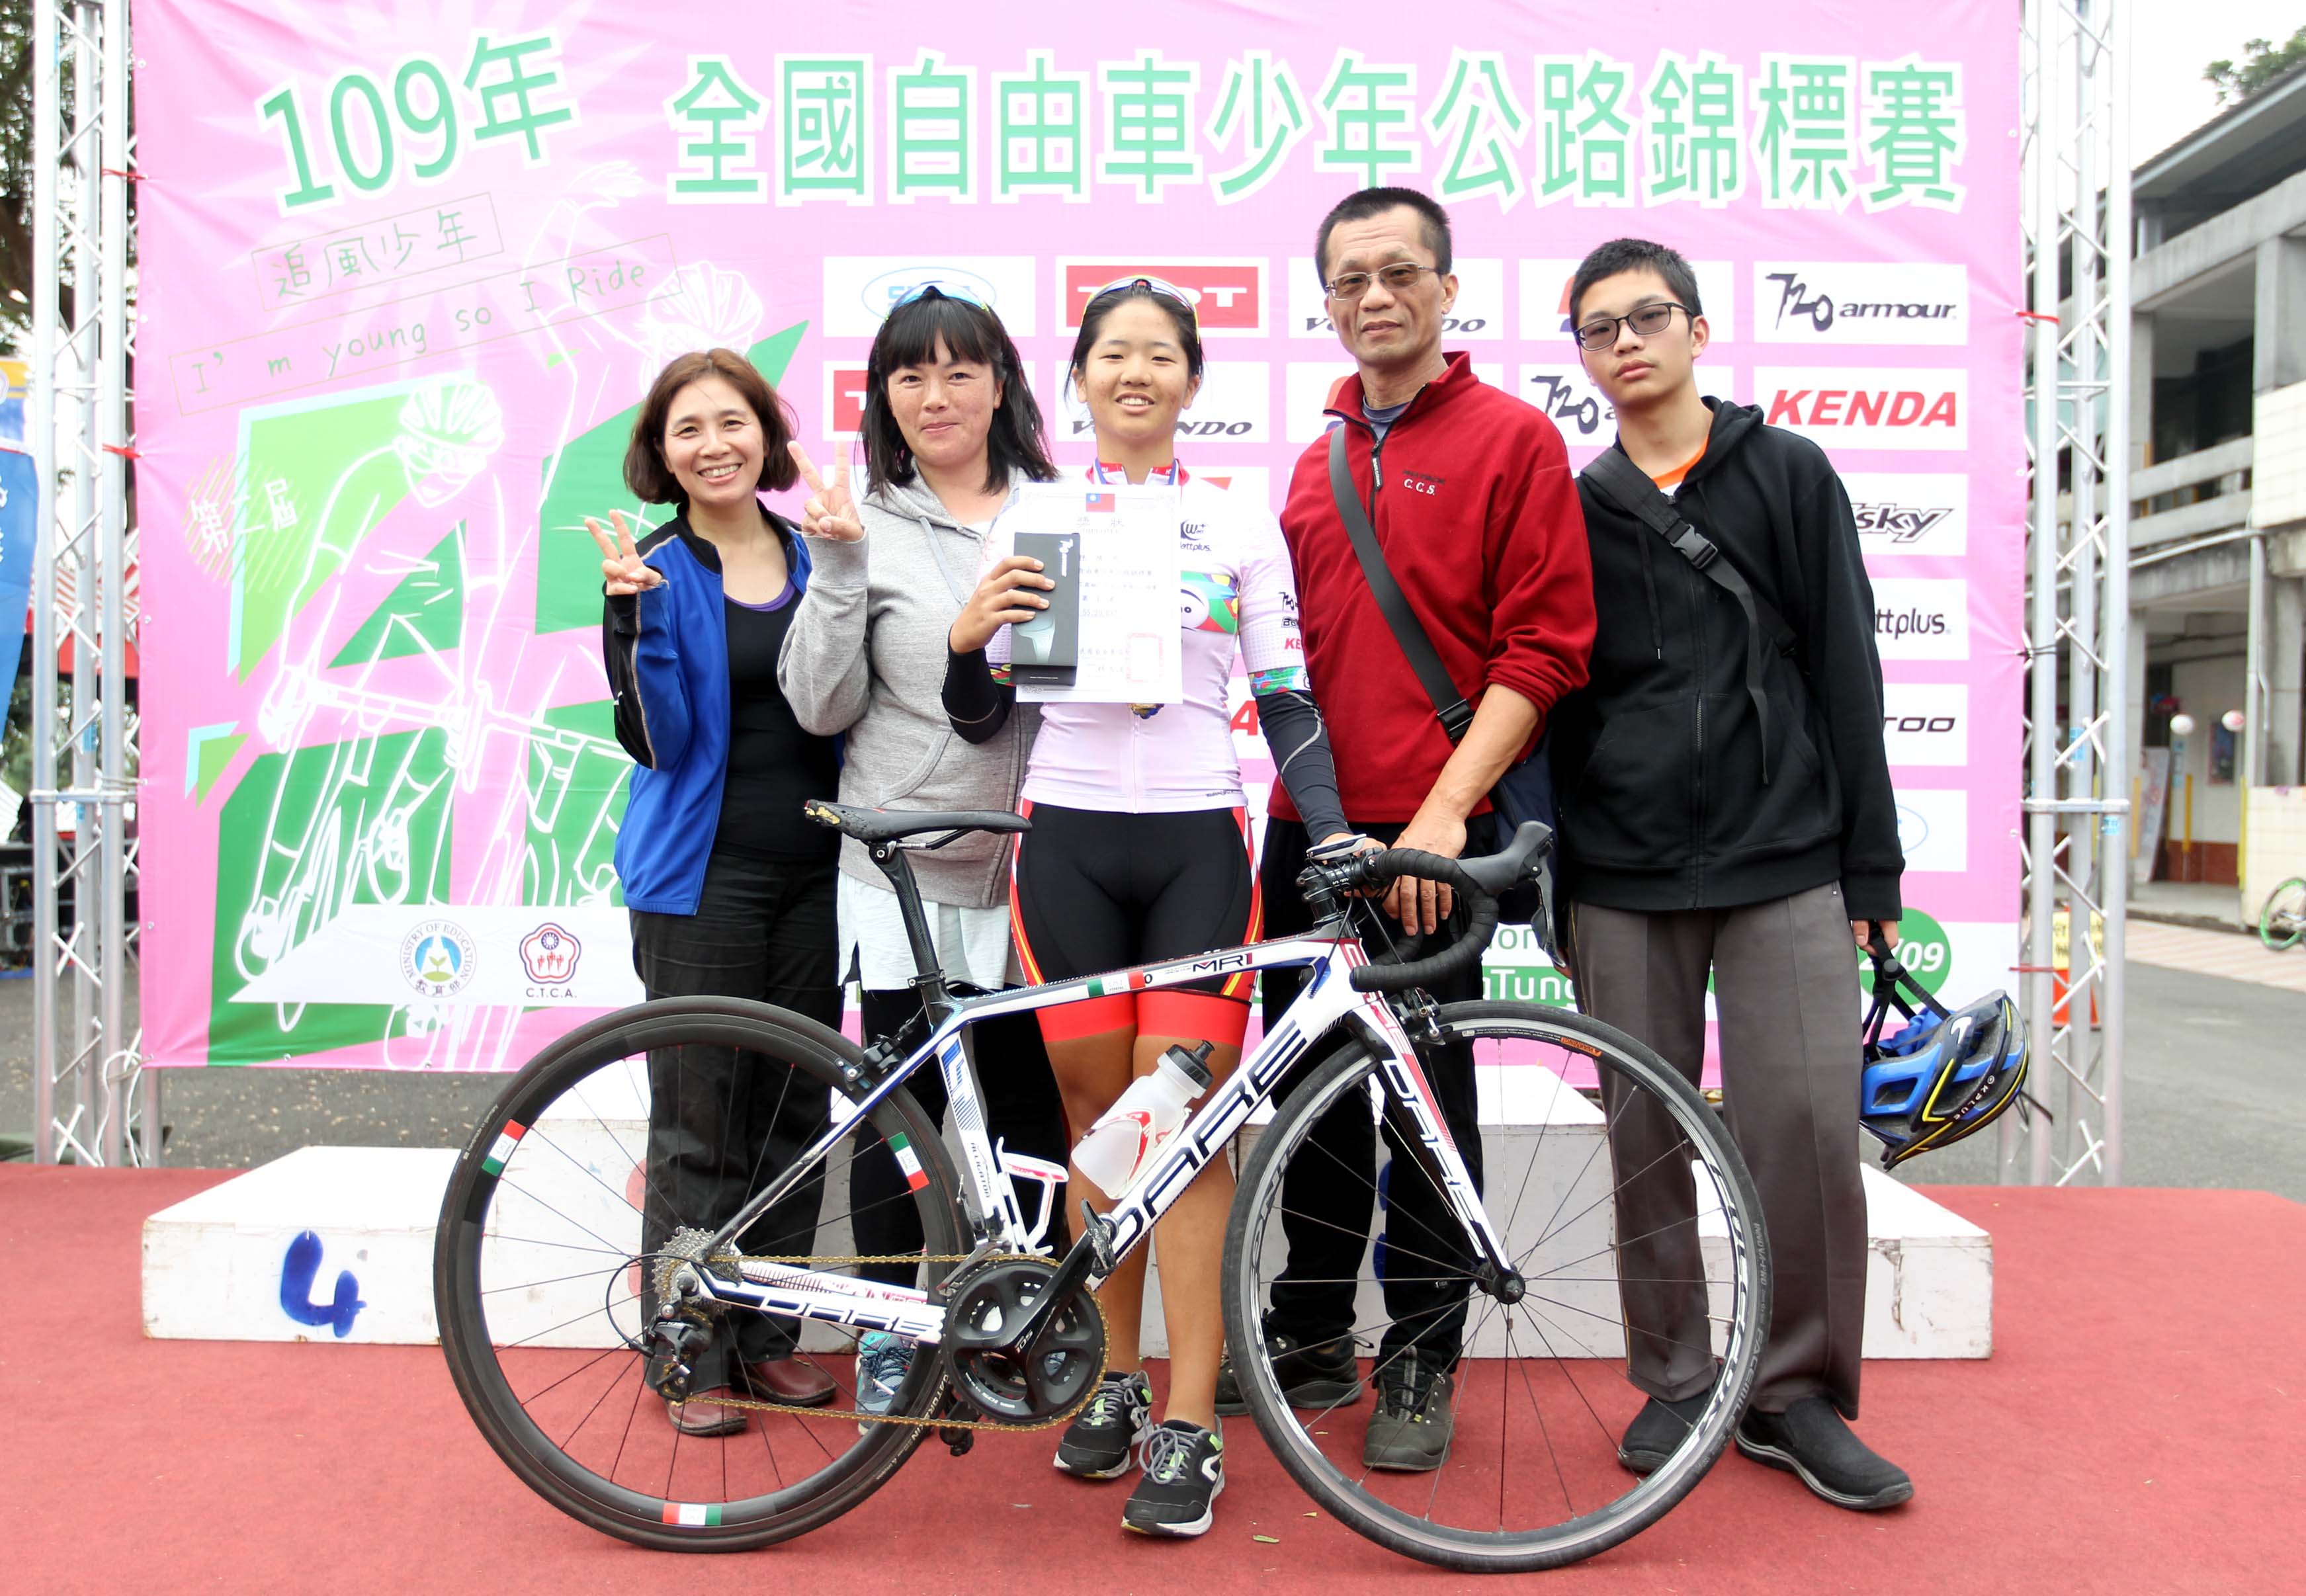 714兩個月前才開刀取出鋼板的新竹市世界高中陳靖昀中在女少17歲組封后中華民國自由車協會提供